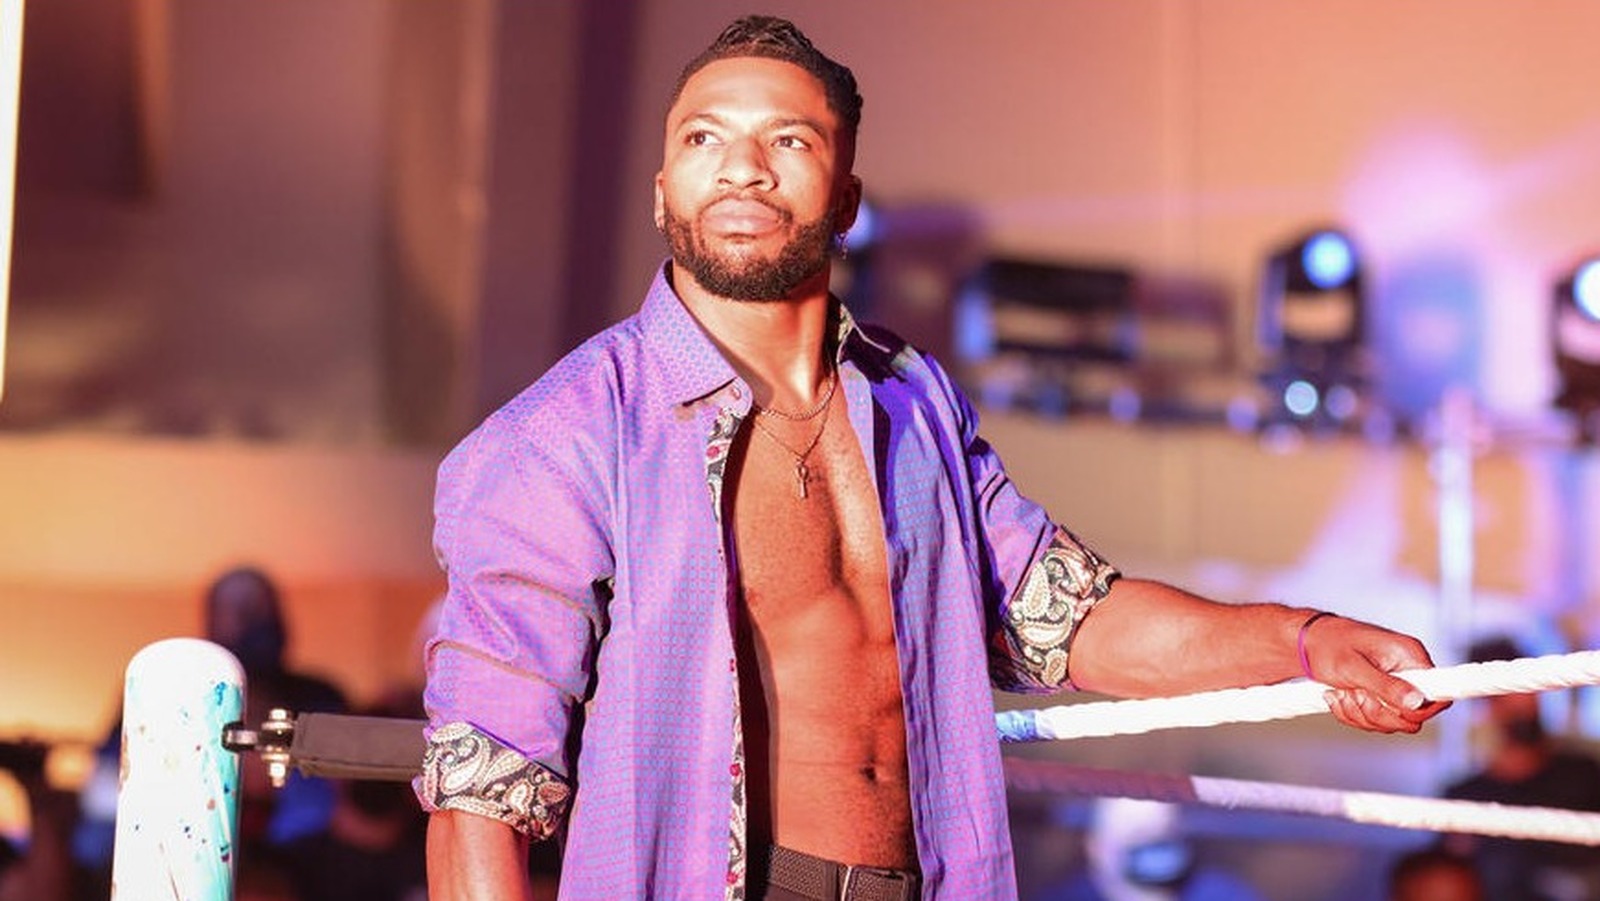 WWE NXT Star Trick Williams aparecerá en la promoción Reality Of Wrestling de Booker T